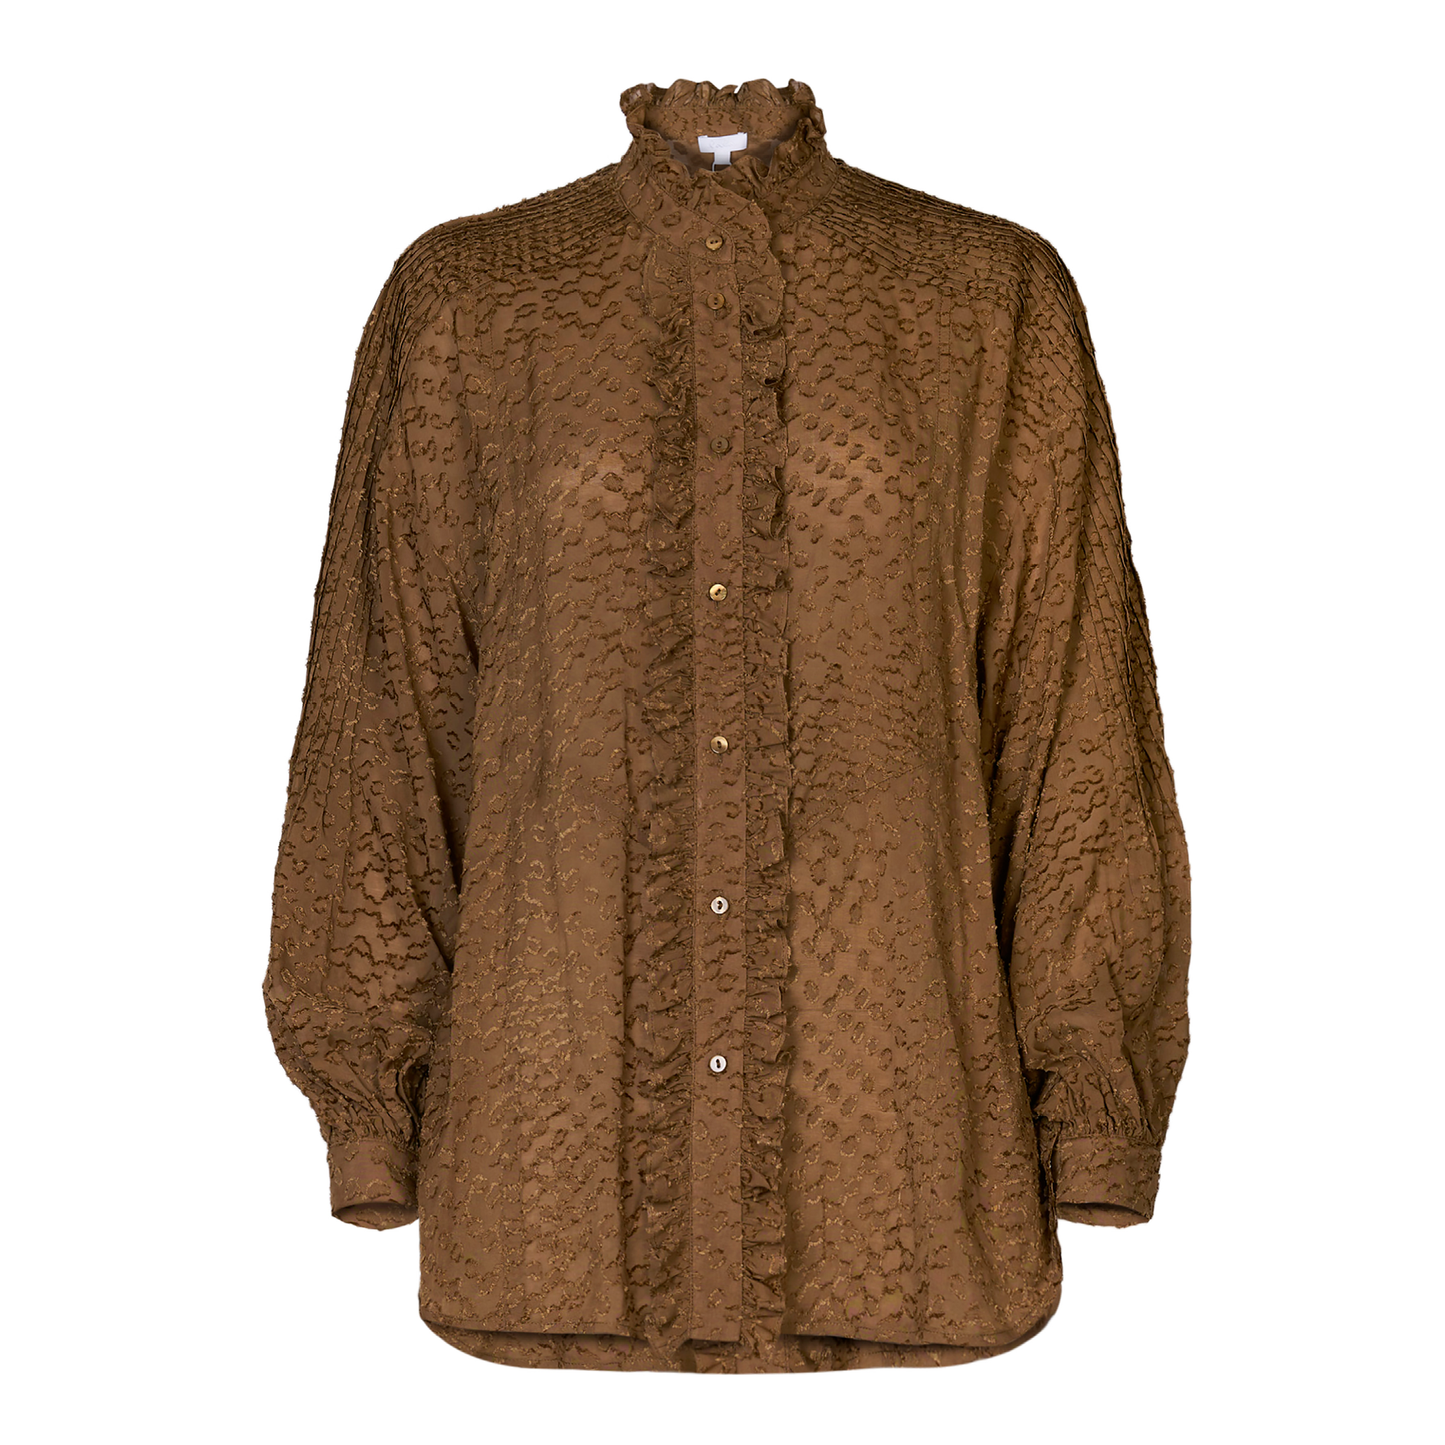 Beecedar Shirt, Brown